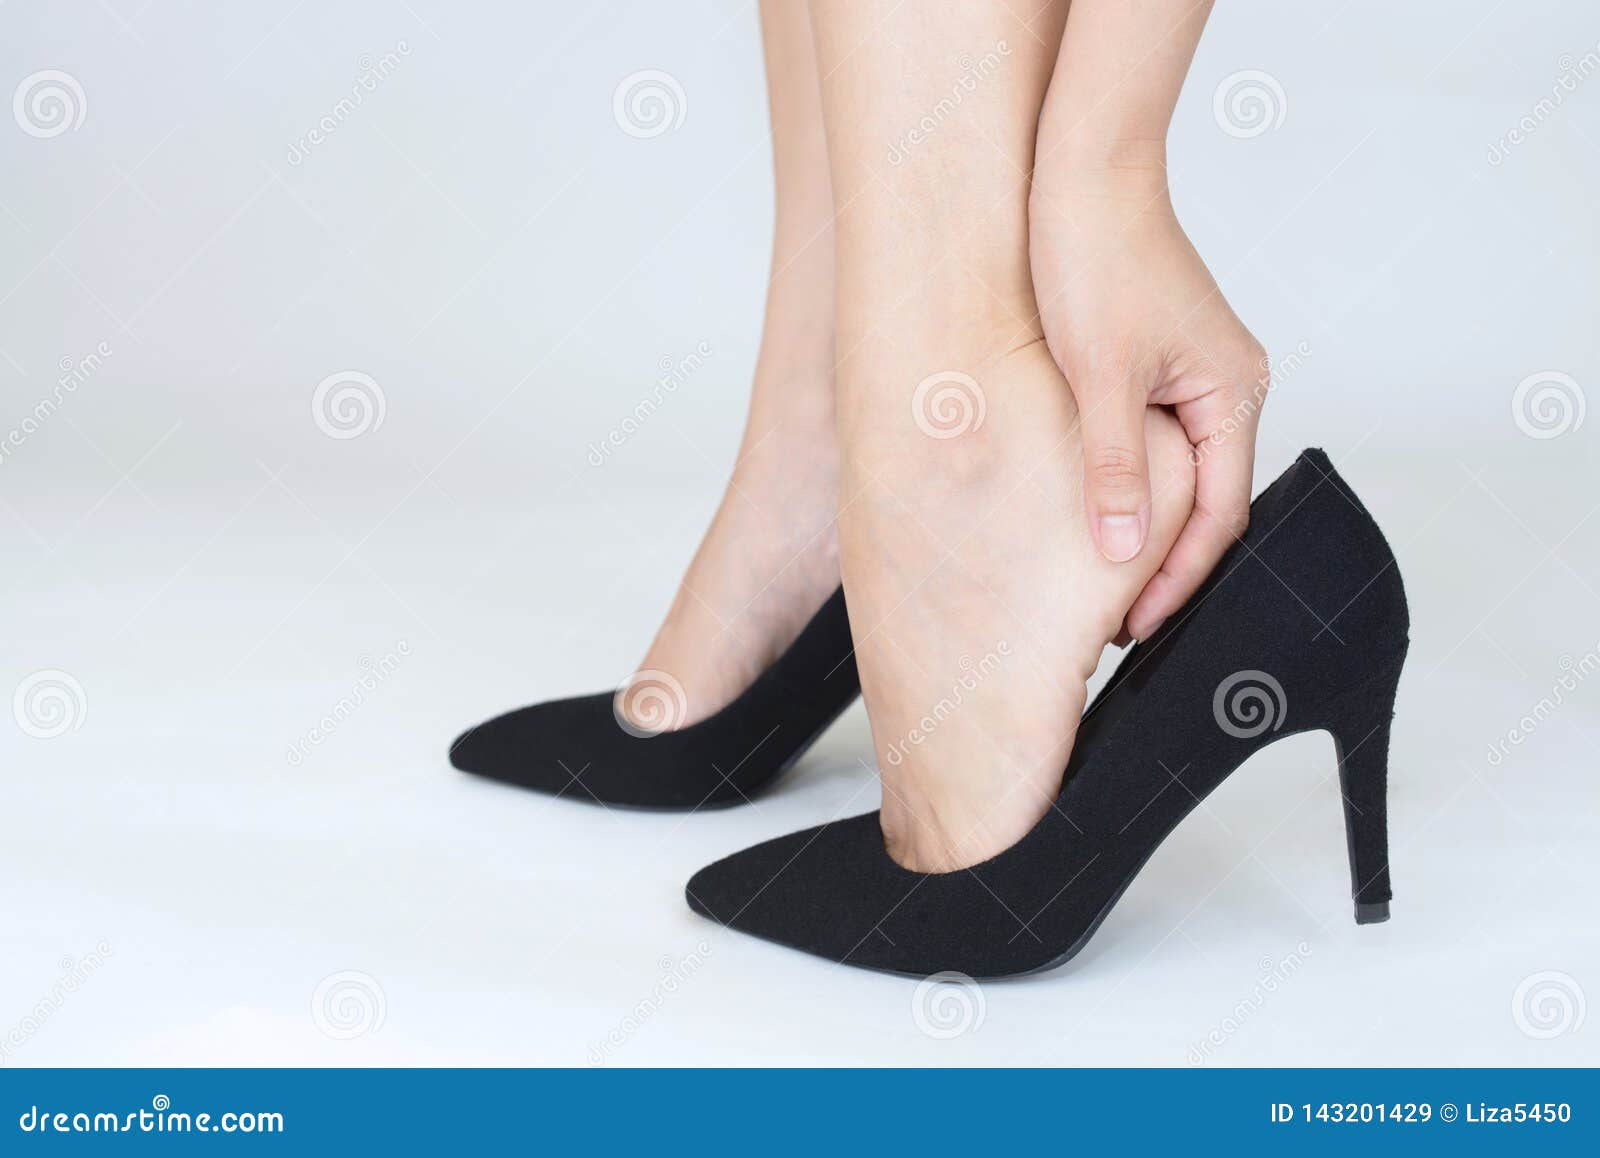 Pies De La Mujer Duelen Para Llevar Los Zapatos Del Tac?n Alto Imagen de archivo - de zapatos: 143201429